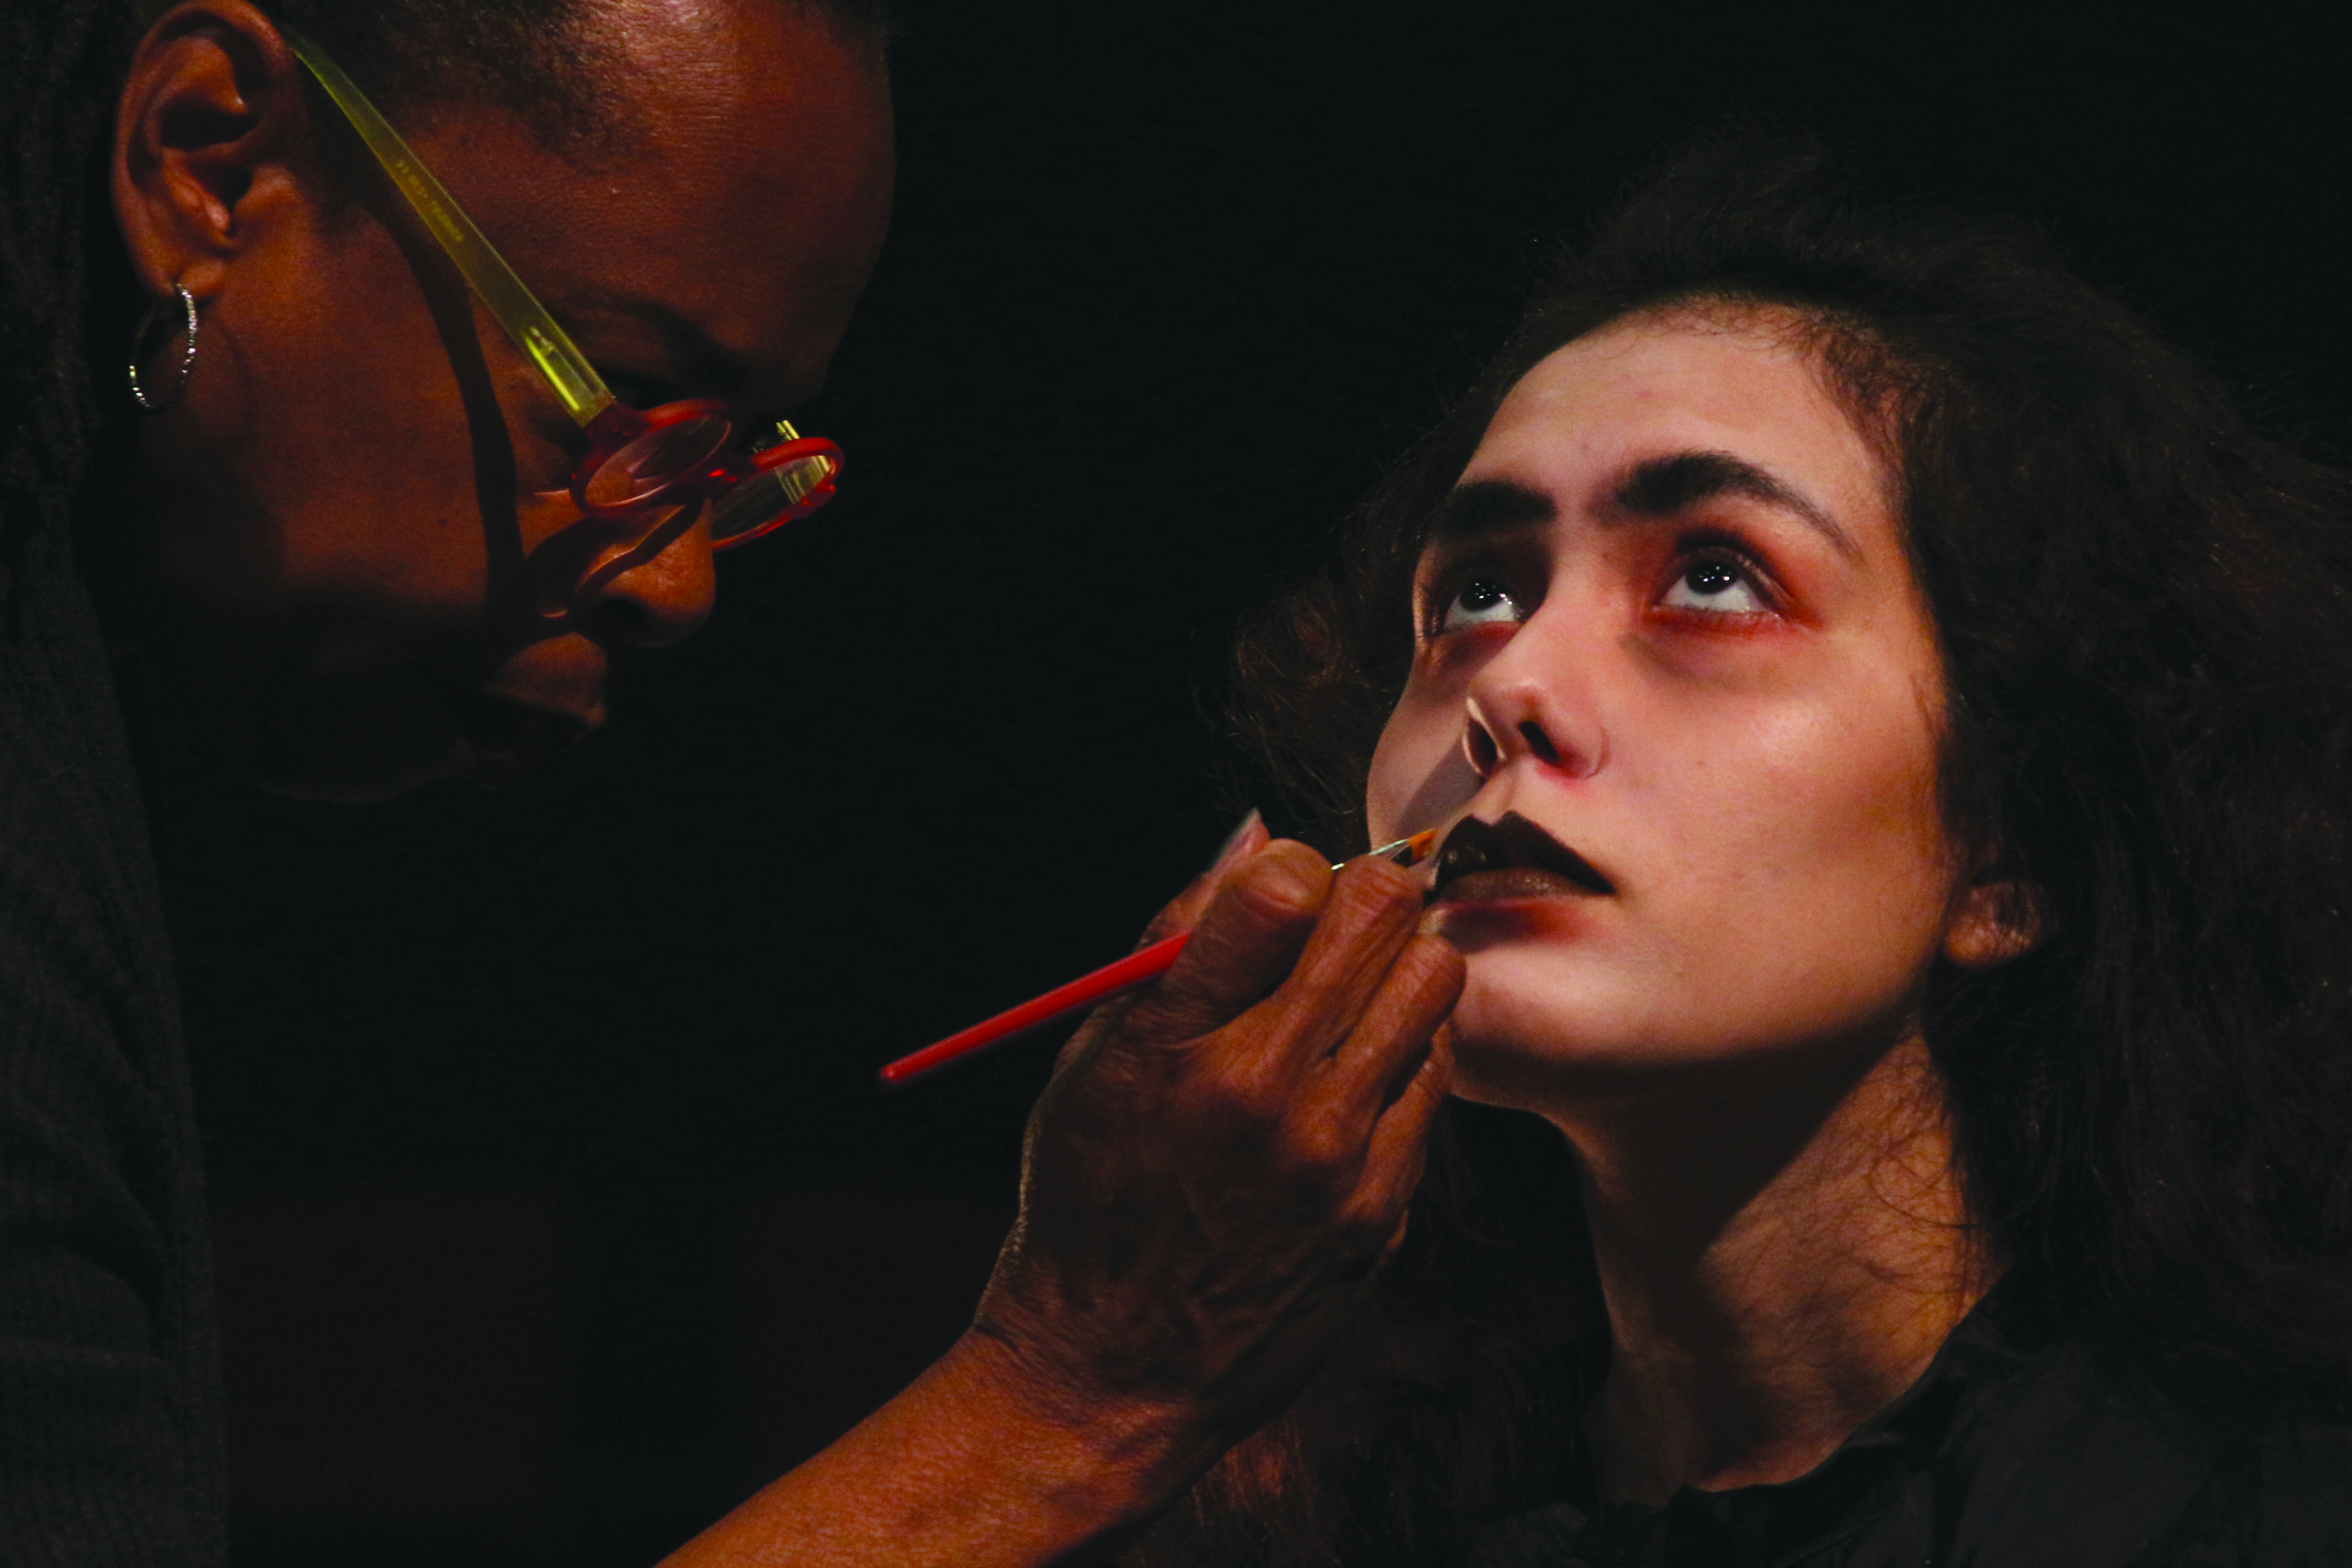 Makeup artist teaches blood, gore